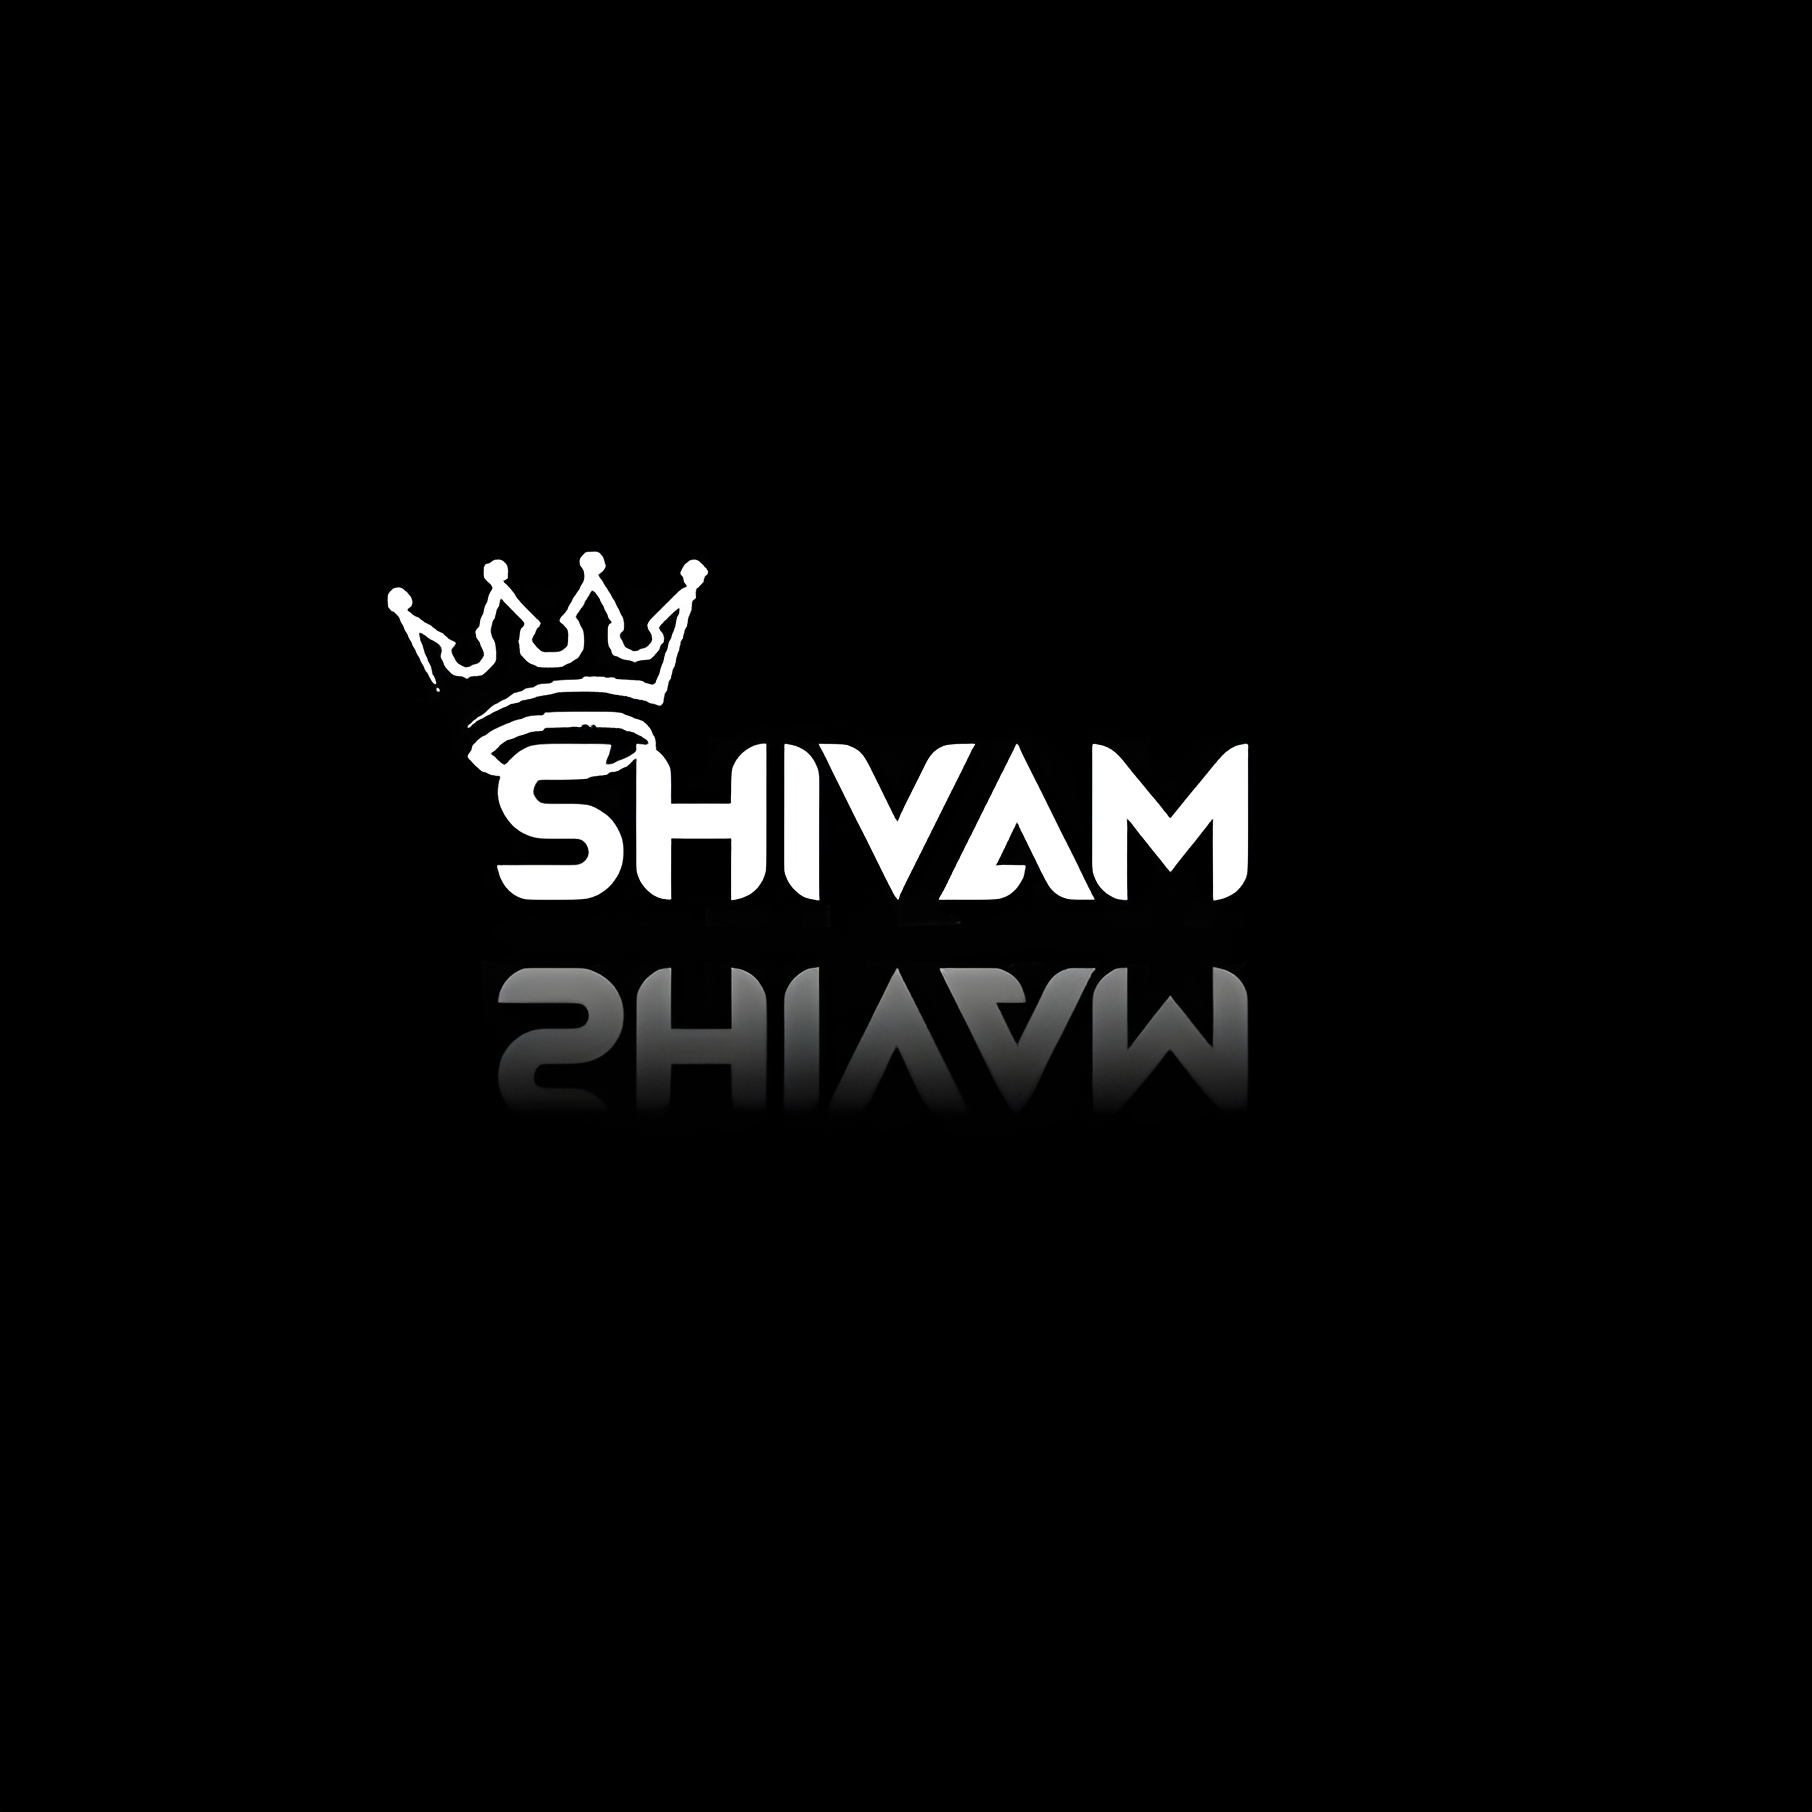 Shivam name - king shivam